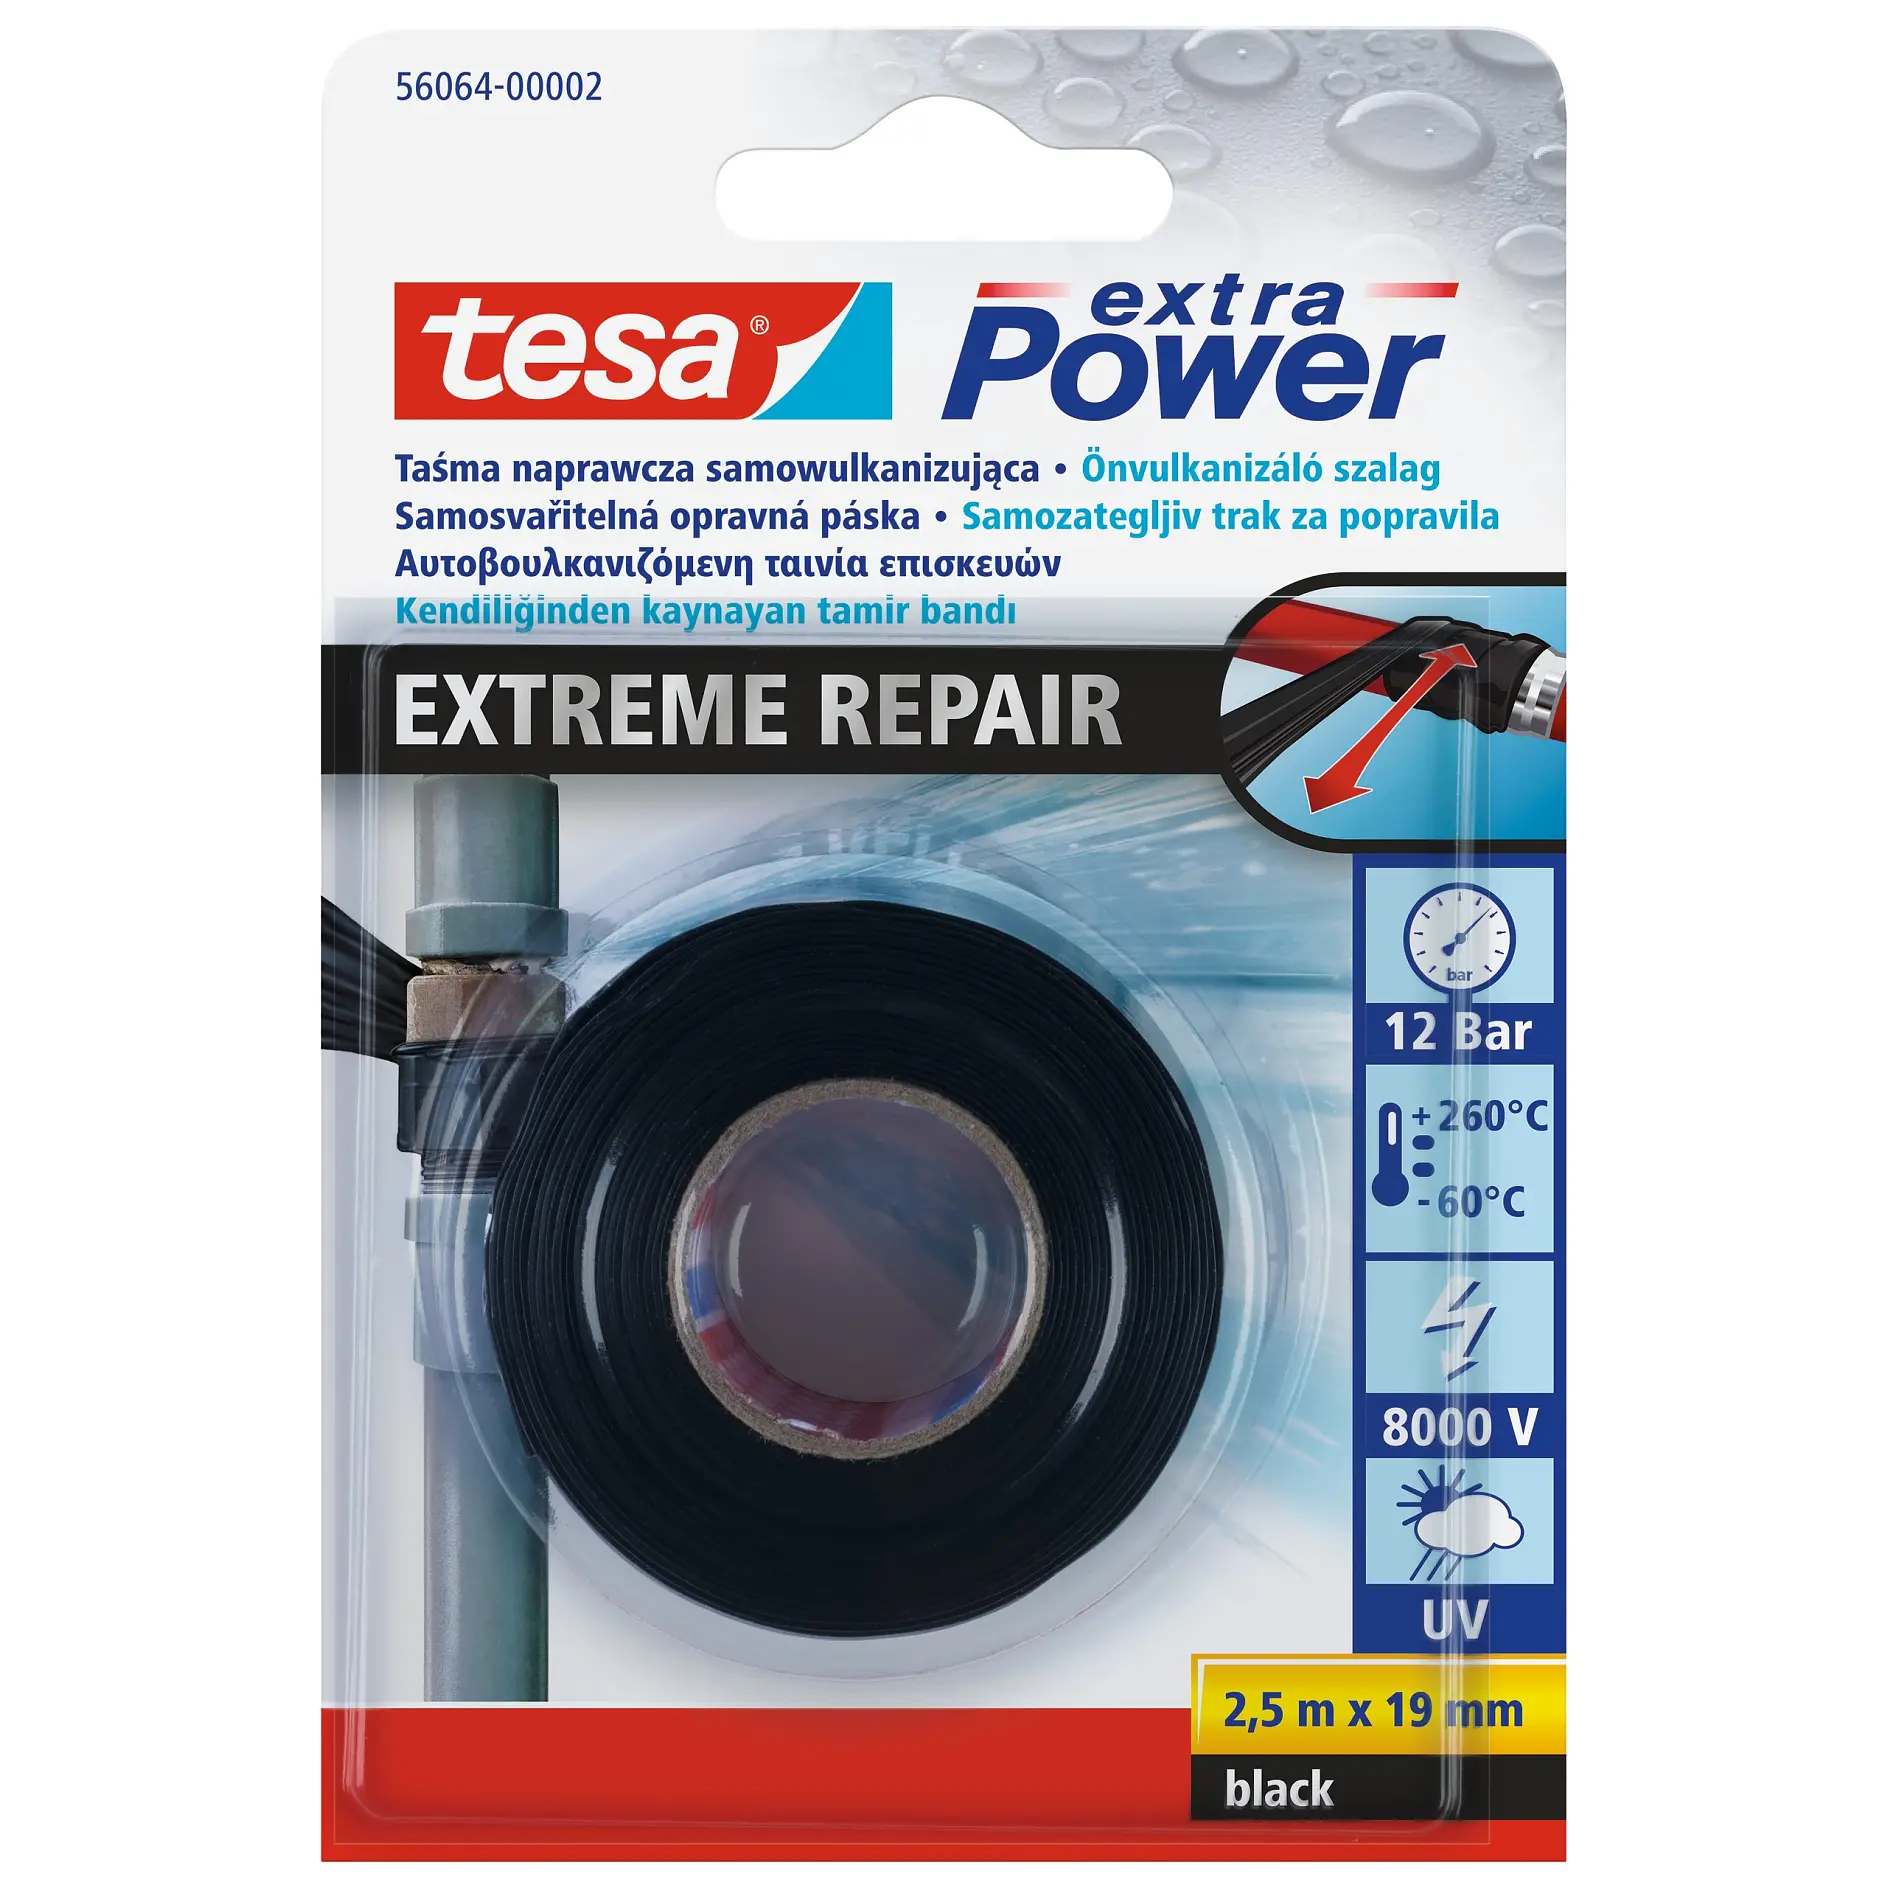 [en-en] 56064-02-00 - tesa Extra Power Extreme Repair black 2,5m:19mm